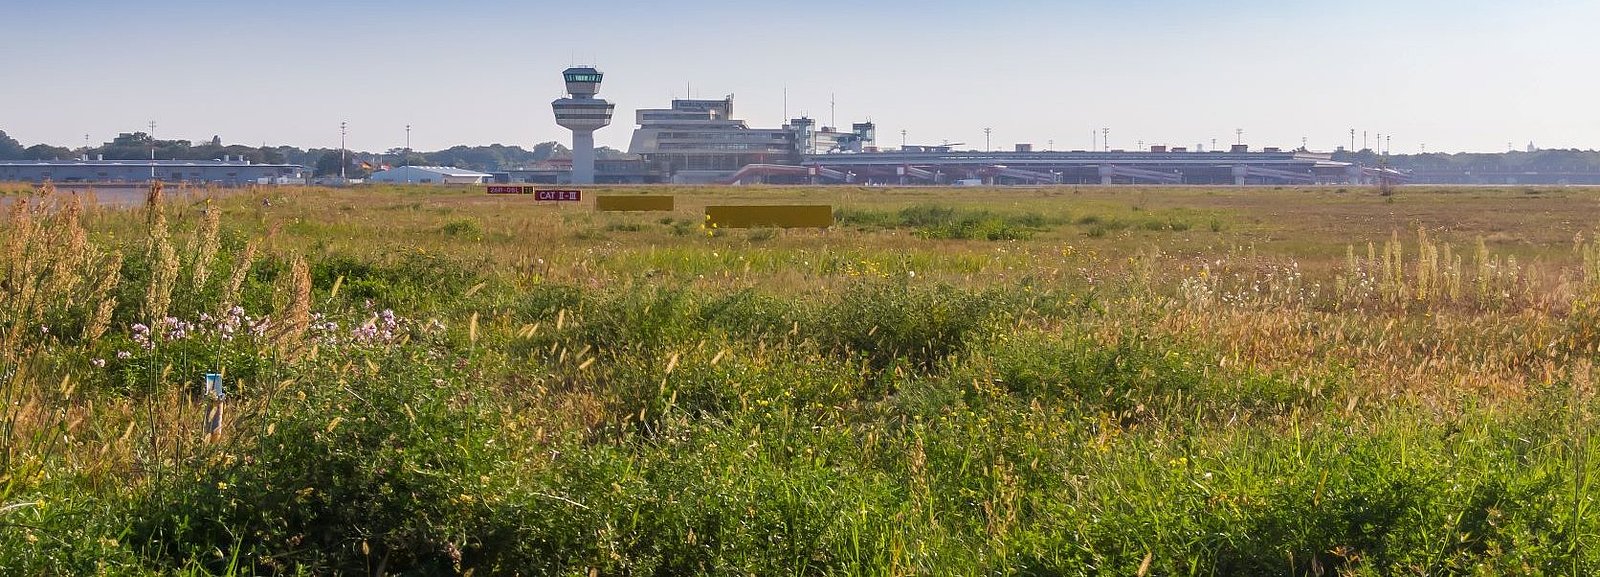 Grasflächen auf dem ehemaligen Flughafen Tegel und im Hintergrund der Tower und das Terminalgebäude